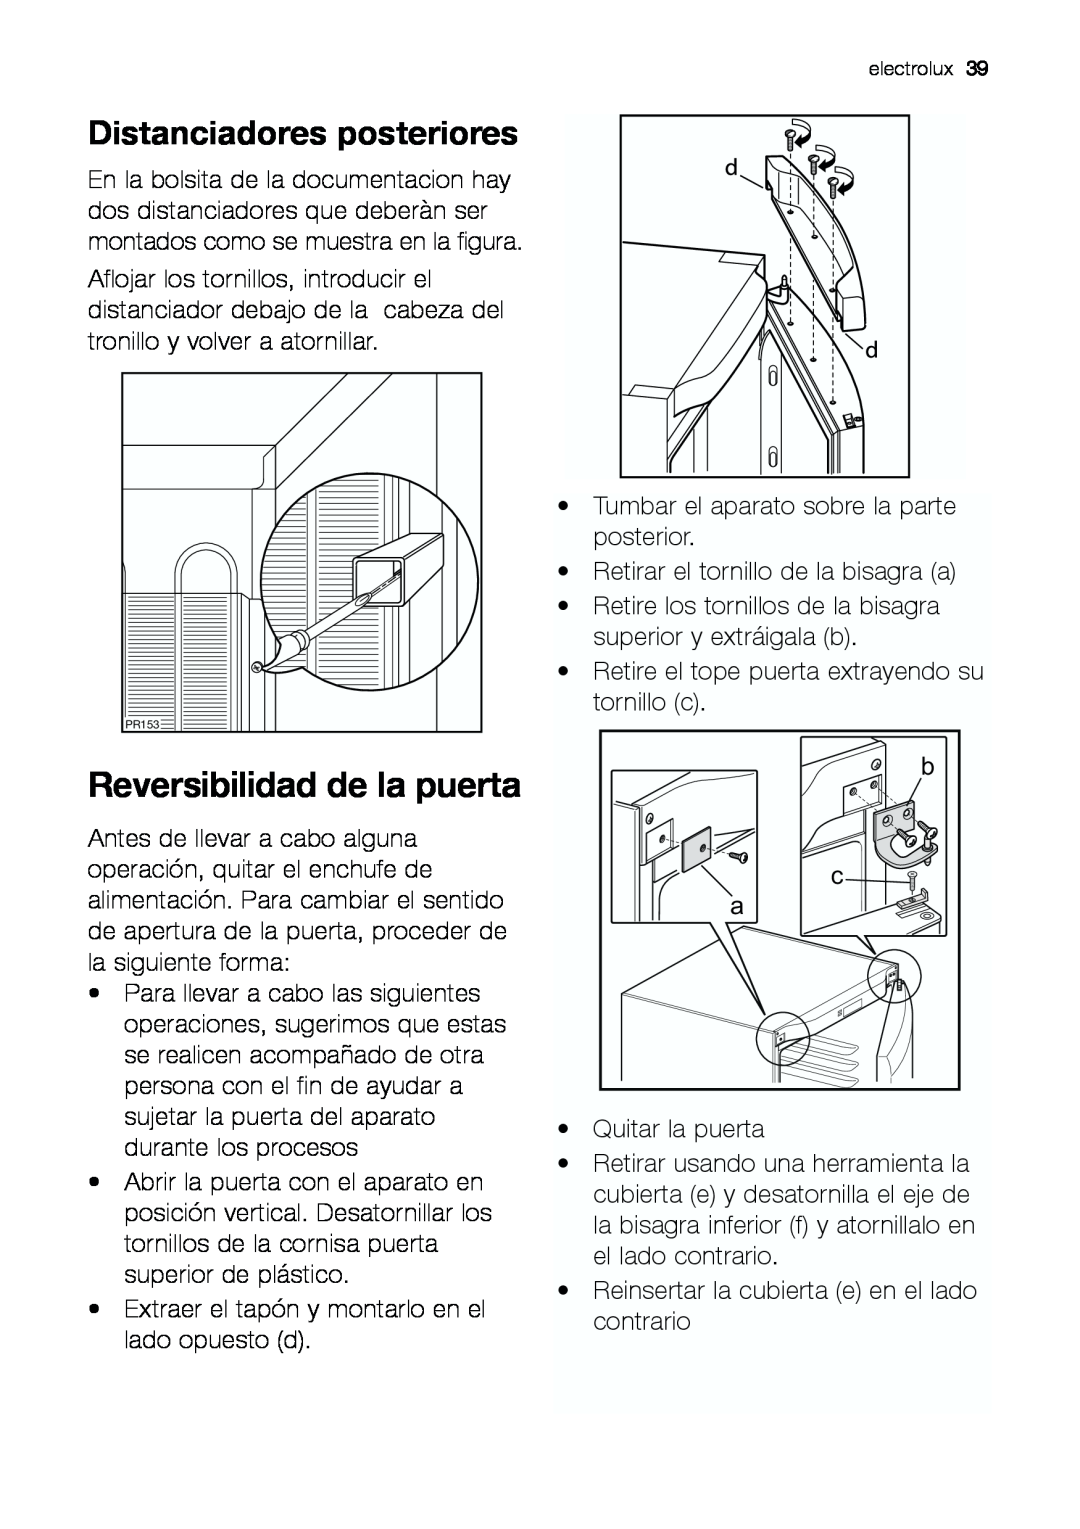 Electrolux EUF 27391 X manual Reversibilidad de la puerta, Distanciadores posteriores 